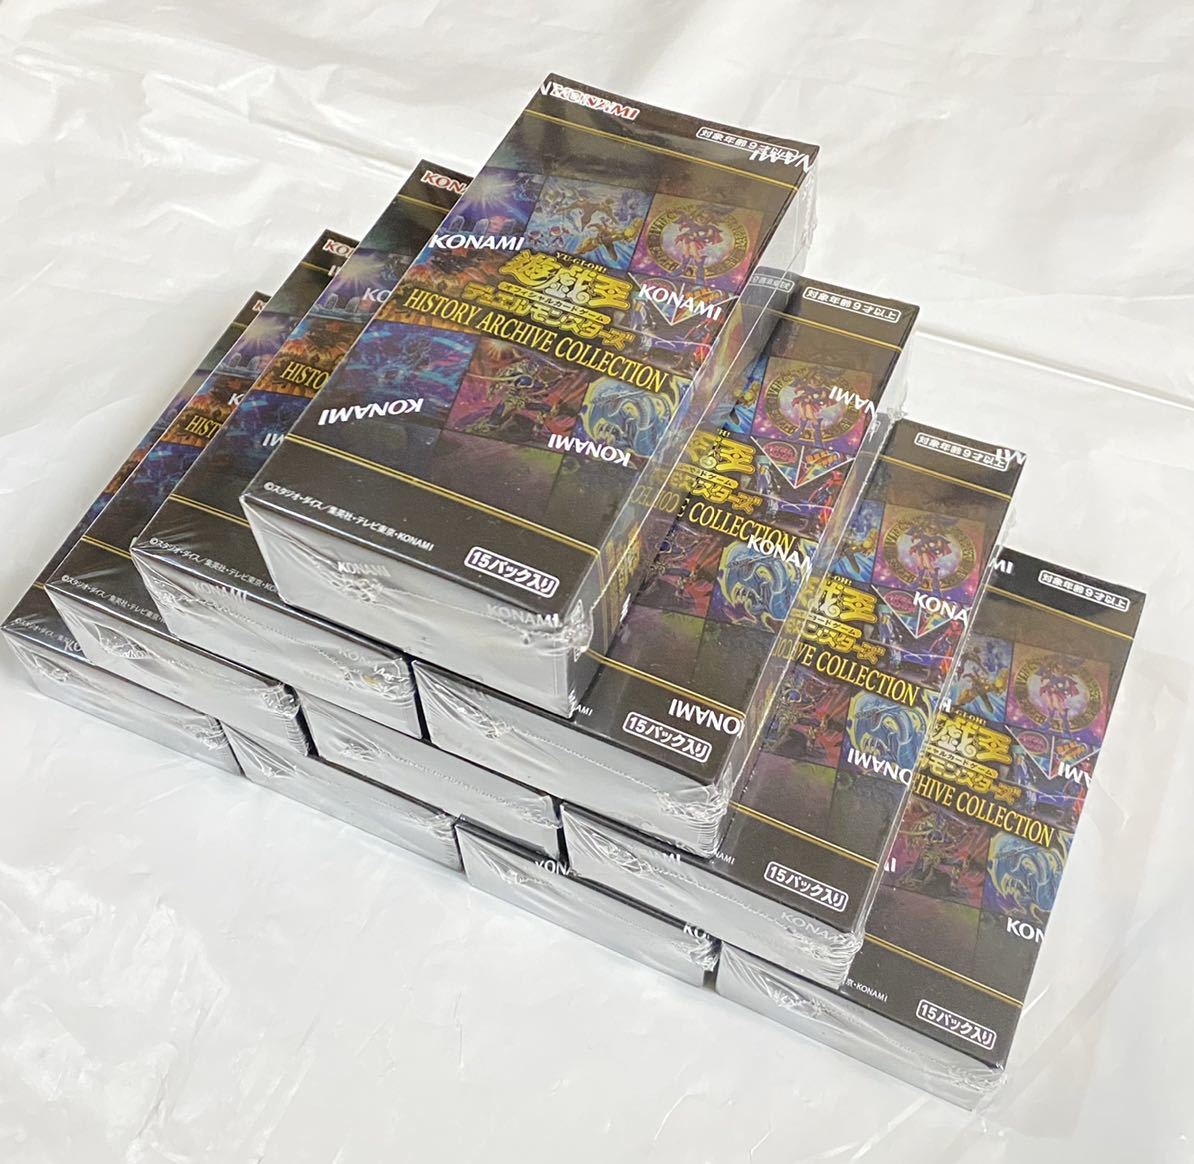 遊戯王 ヒストリーアーカイブコレクション HISTORY ARCHIVE COLLECTION 10BOX 新品 未開封 シュリンク付き ヒスコレ